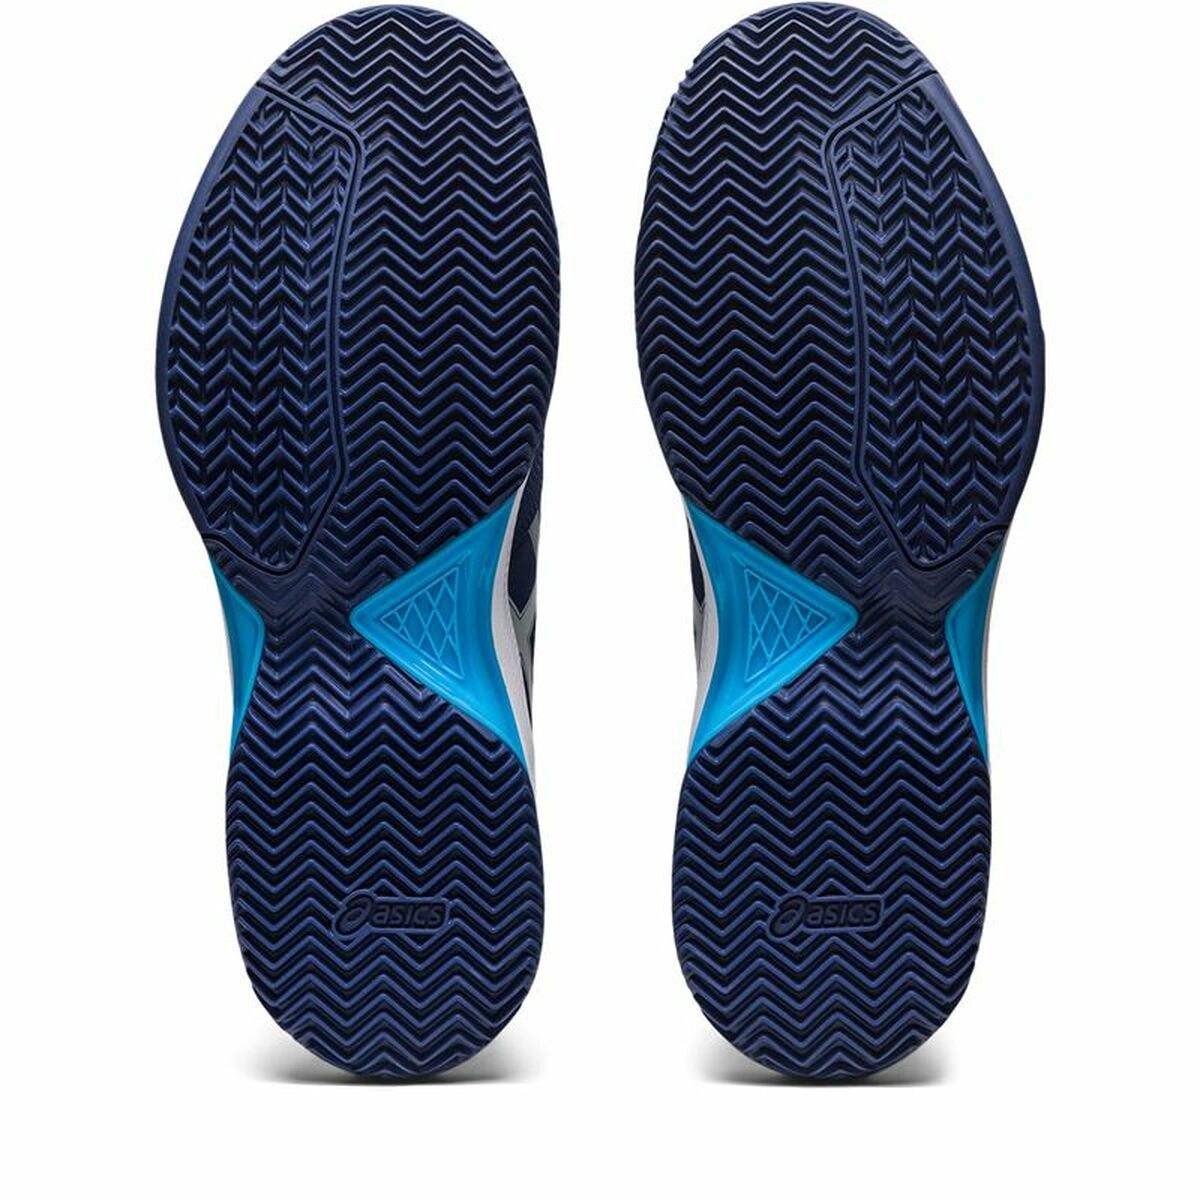 Zapatillas de Padel para Adultos Asics Pro 5 Azul oscuro Hombre